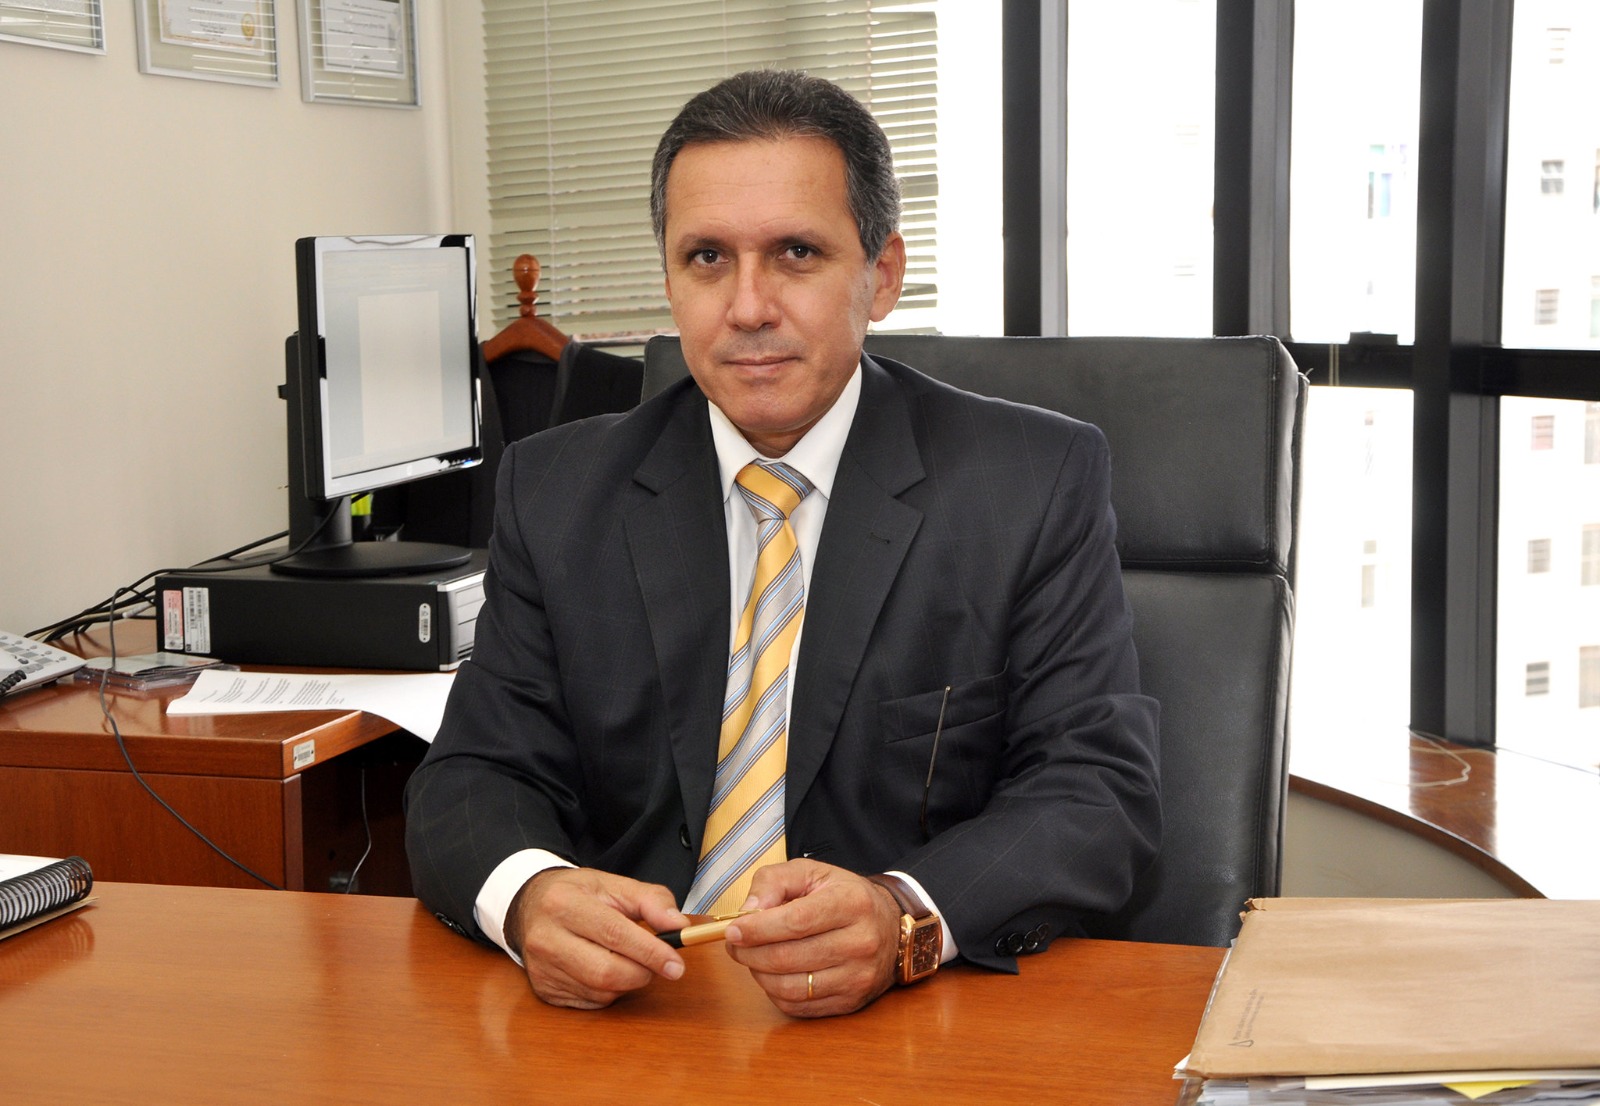 Ministro do STJ encabeça lista de conferencistas do II Congresso Brasileiro de Direito e Sustentabilidade